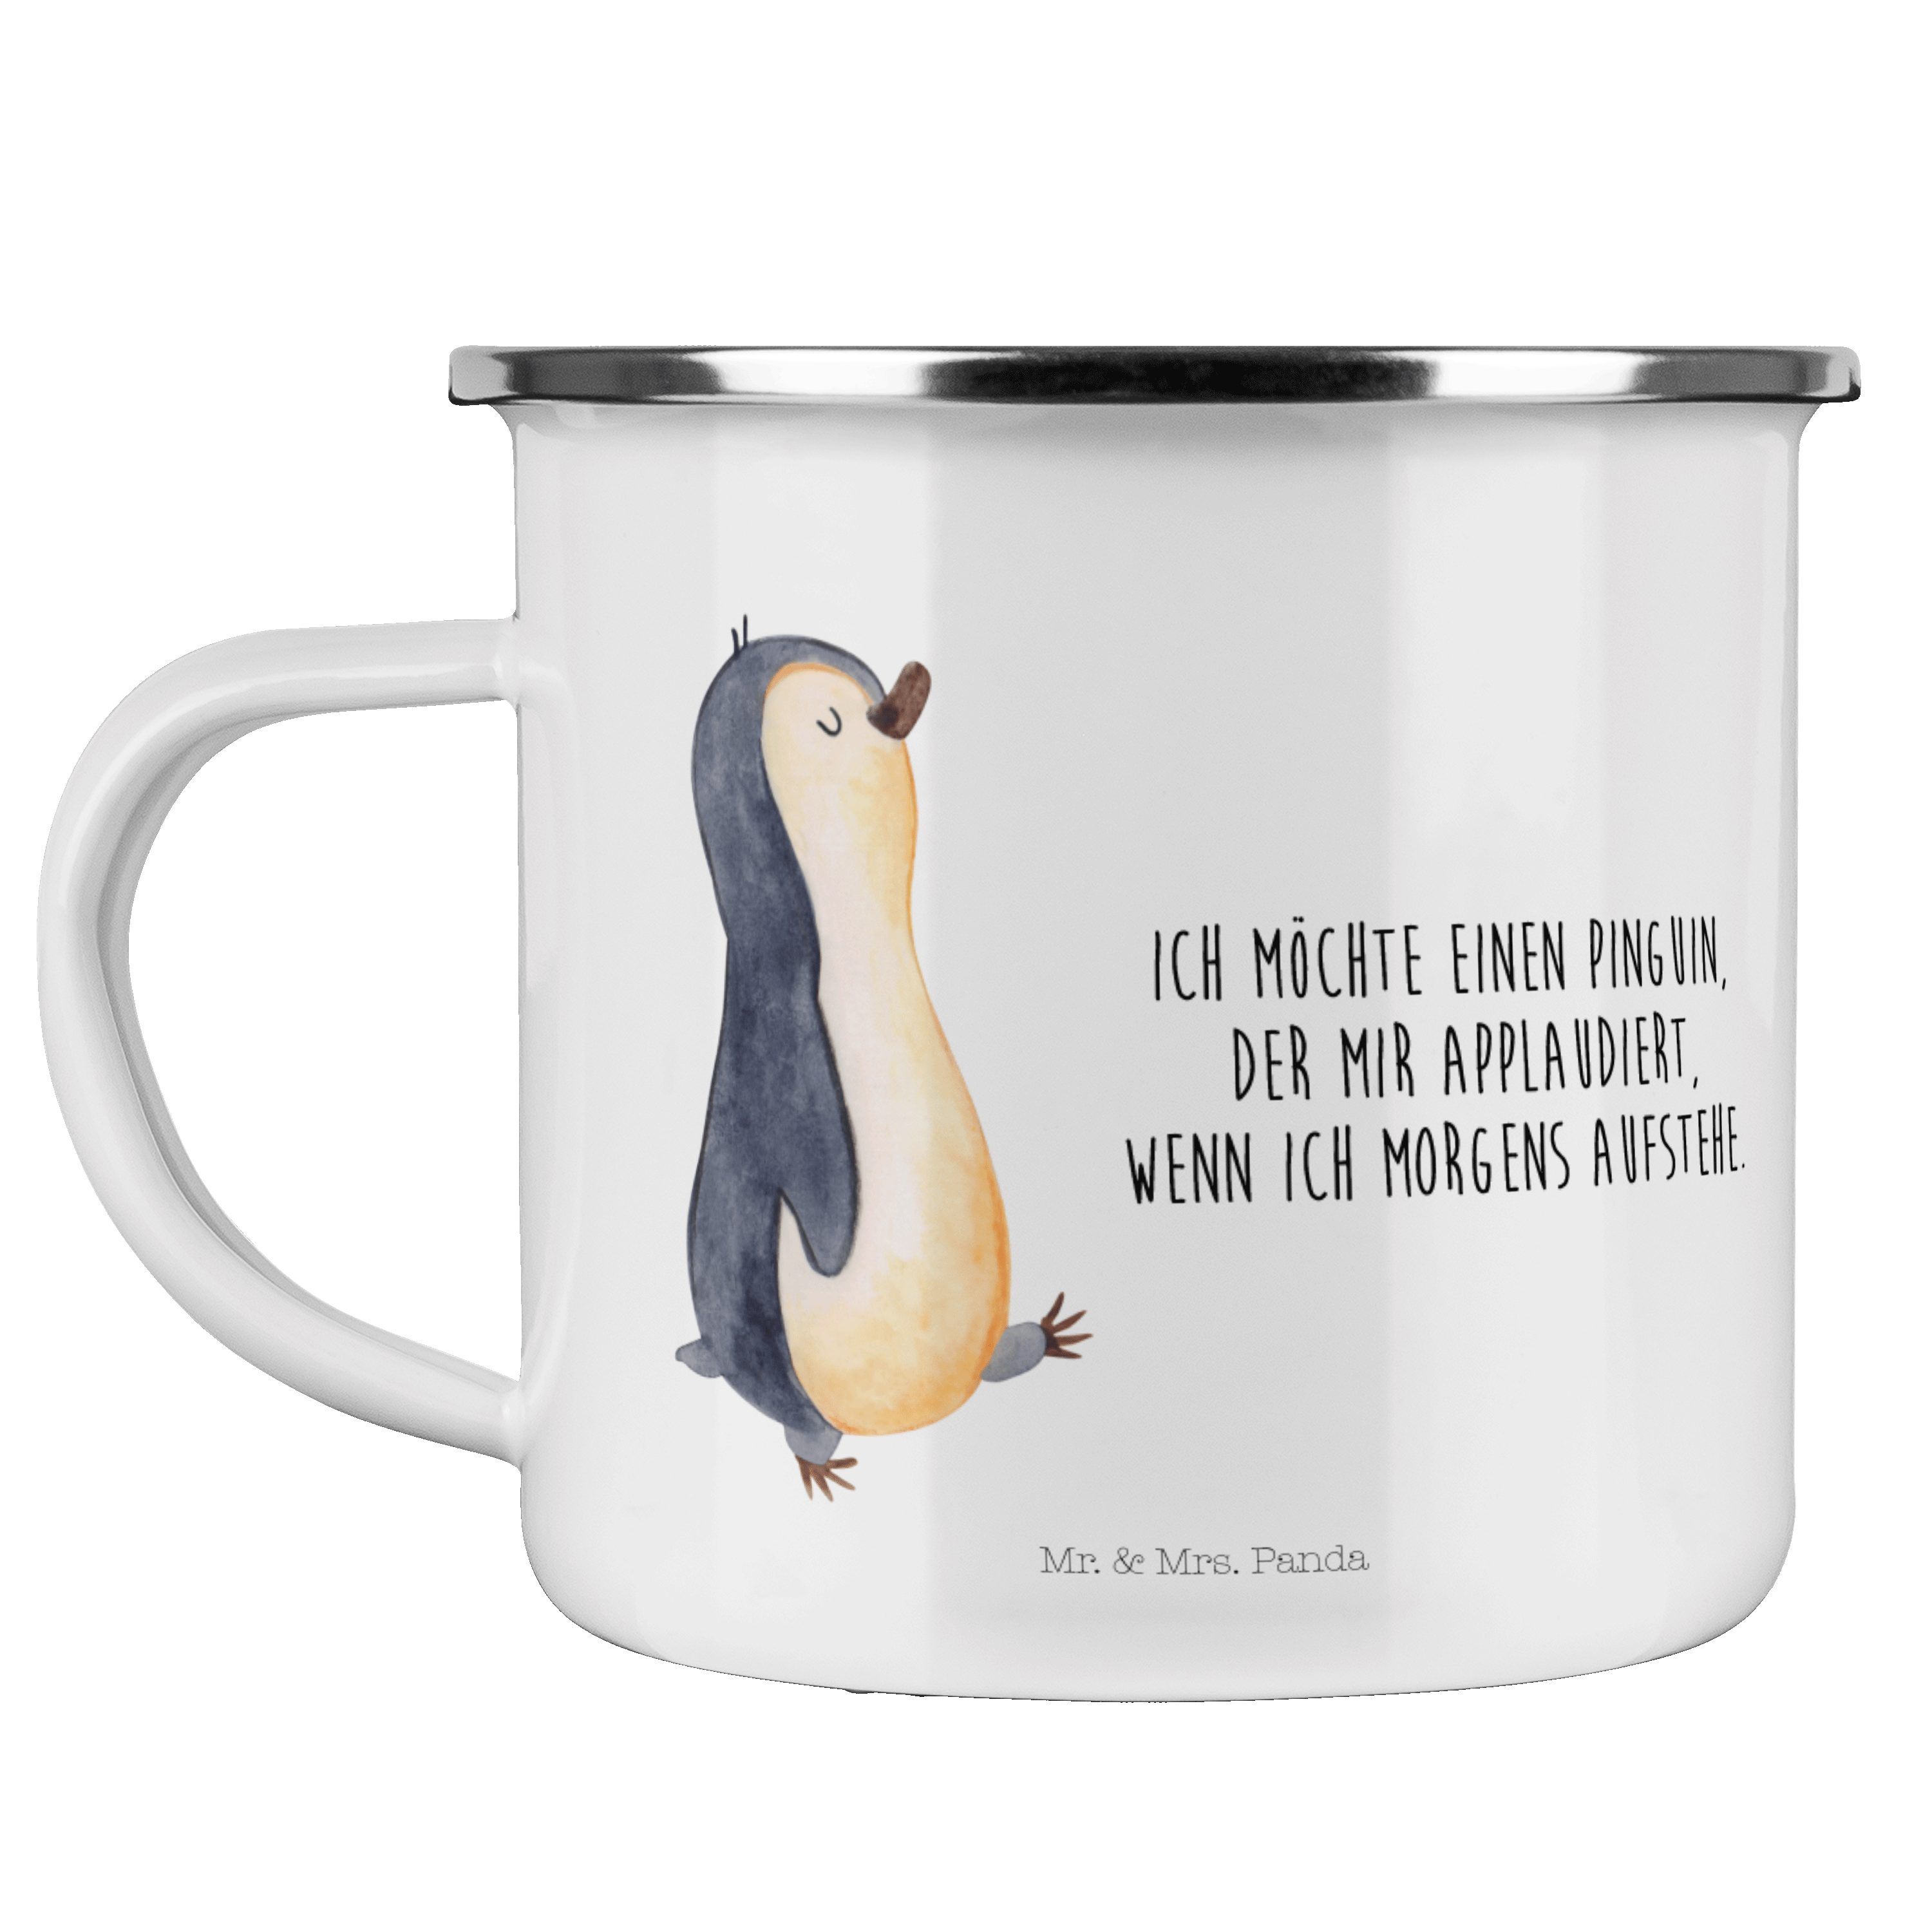 Mr. & Mrs. Panda Becher Pinguin marschierend - Weiß - Geschenk, zufrieden, Schwester, stolz, Emaille